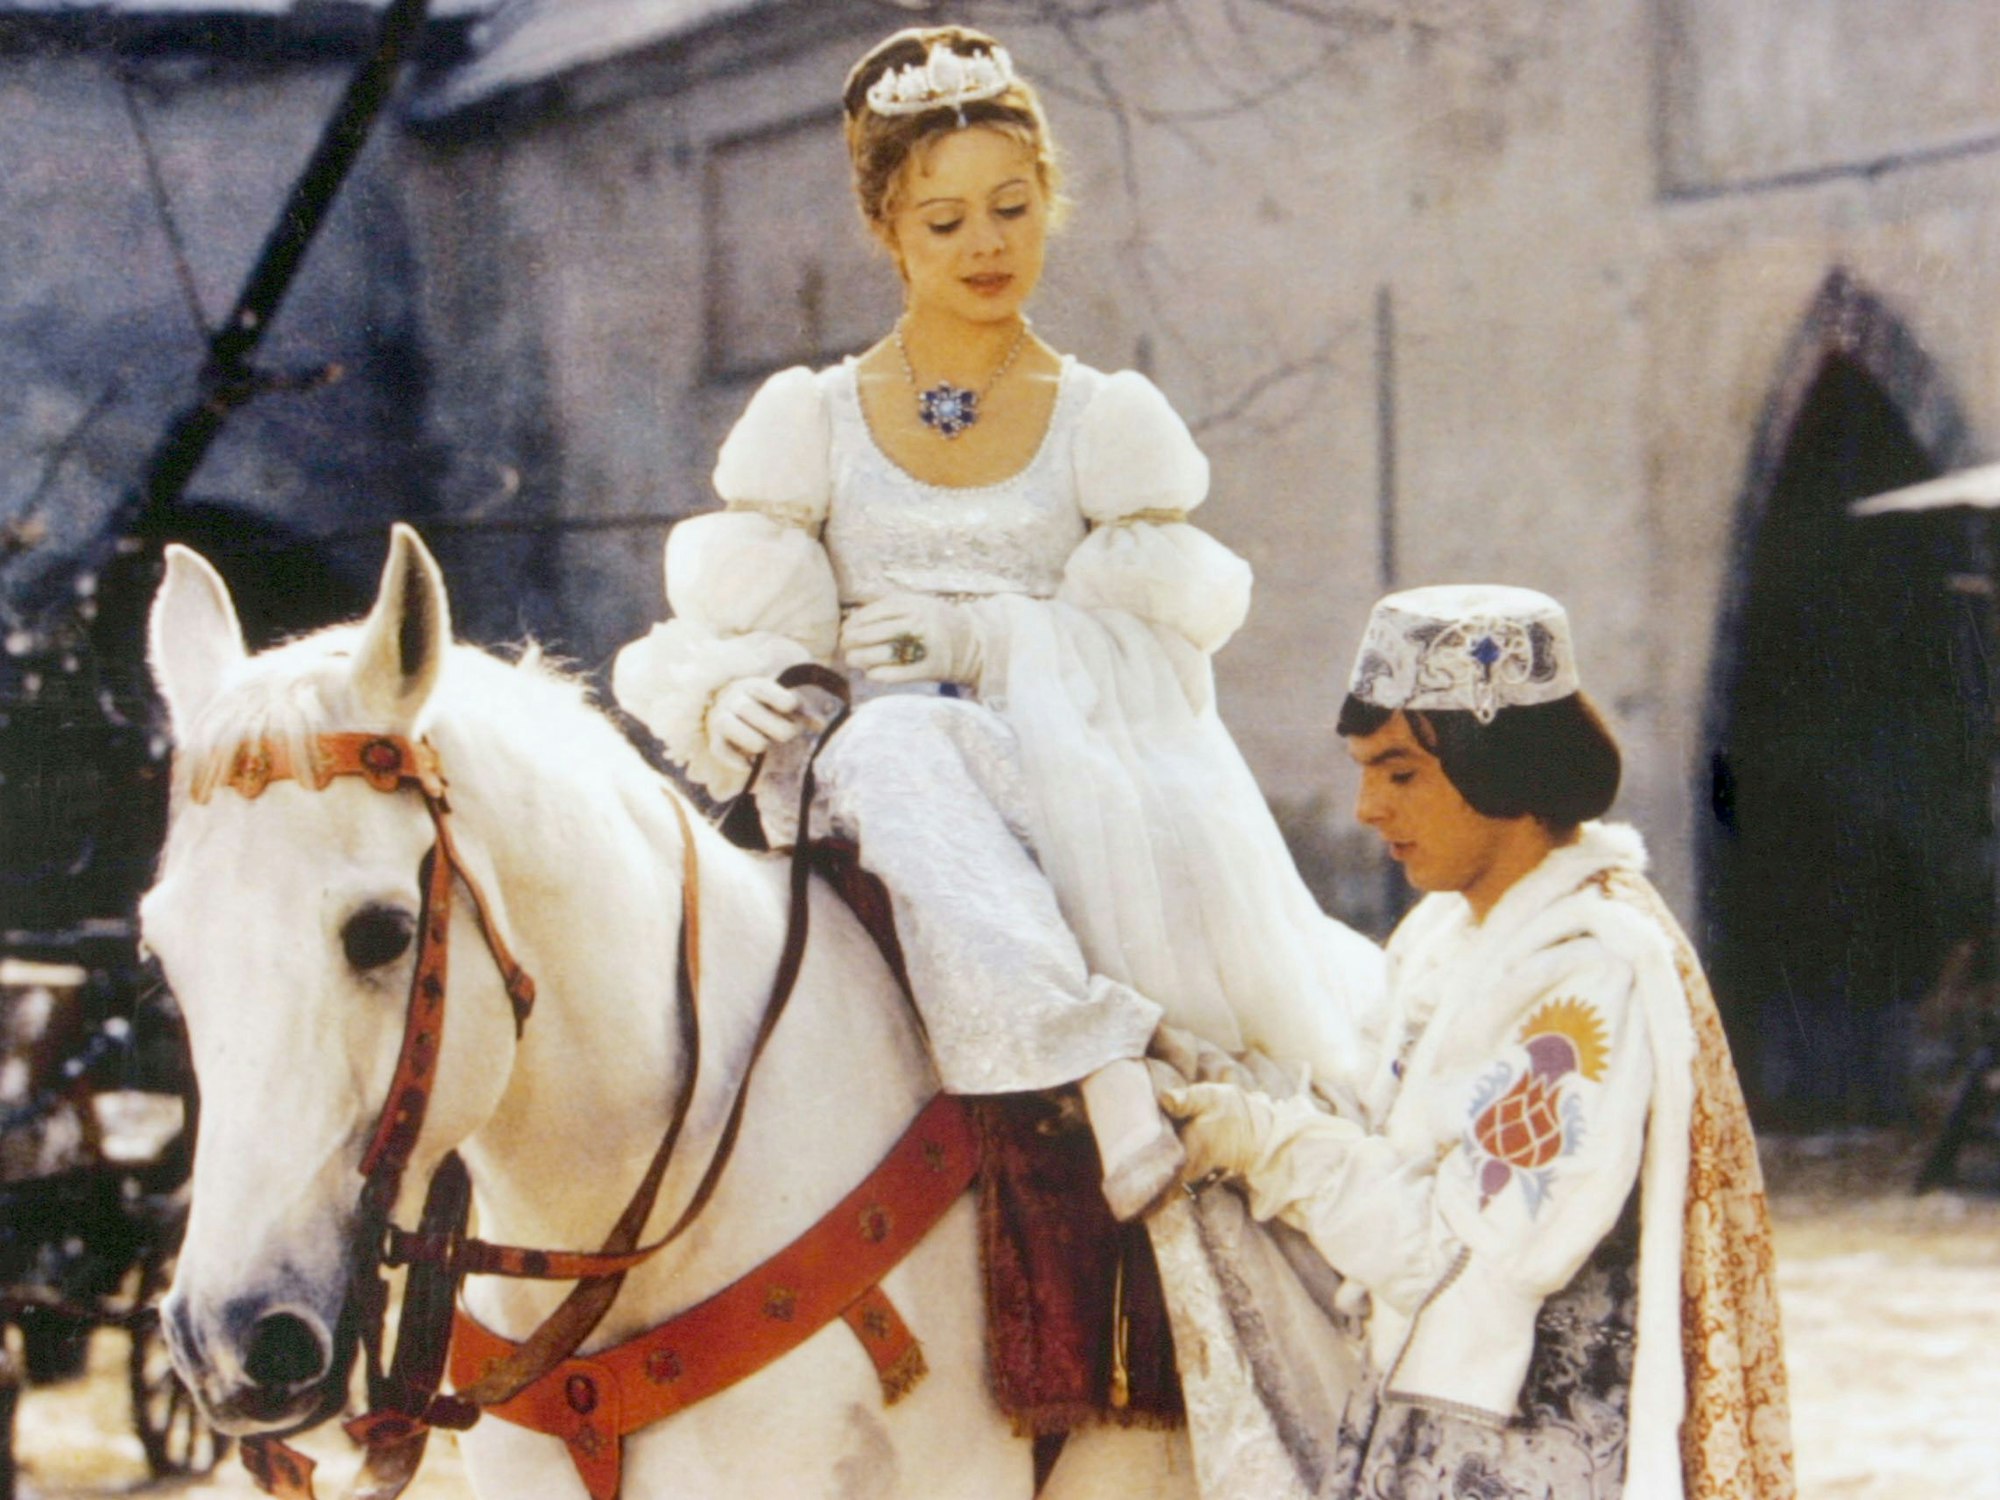 Der Prinz (Pavel Trávnícek) passt Aschenbrödel (Libuse Safránková) den verlorenen Schuh an in einer Szene aus „Drei Haselnüsse für Aschenbrödel“.